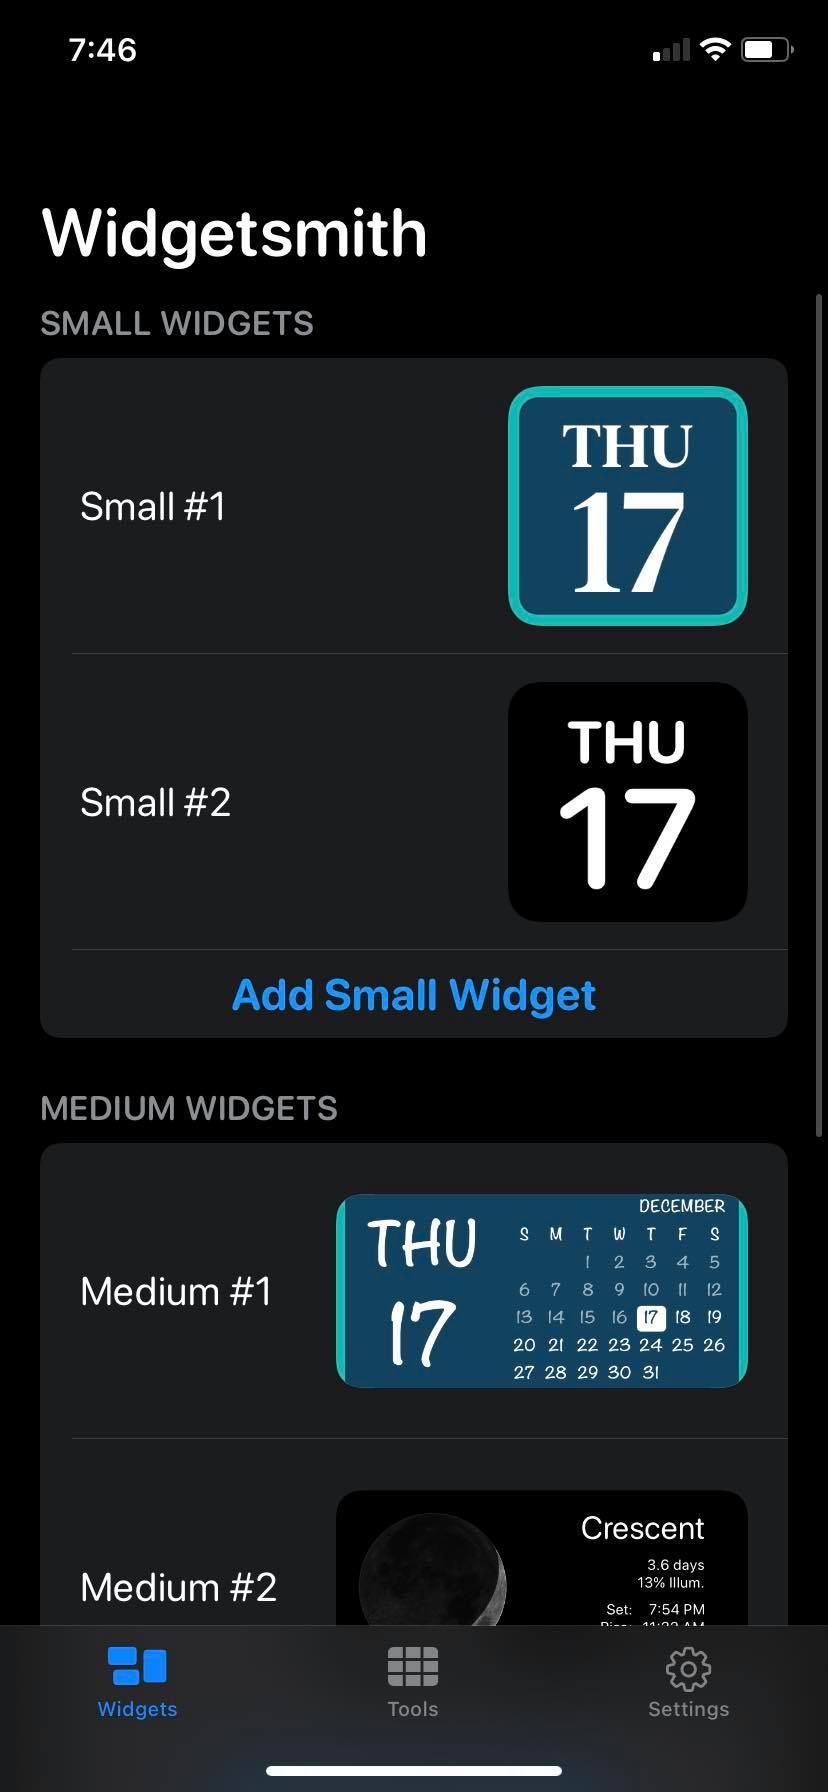 WidgetSmith for iPhone